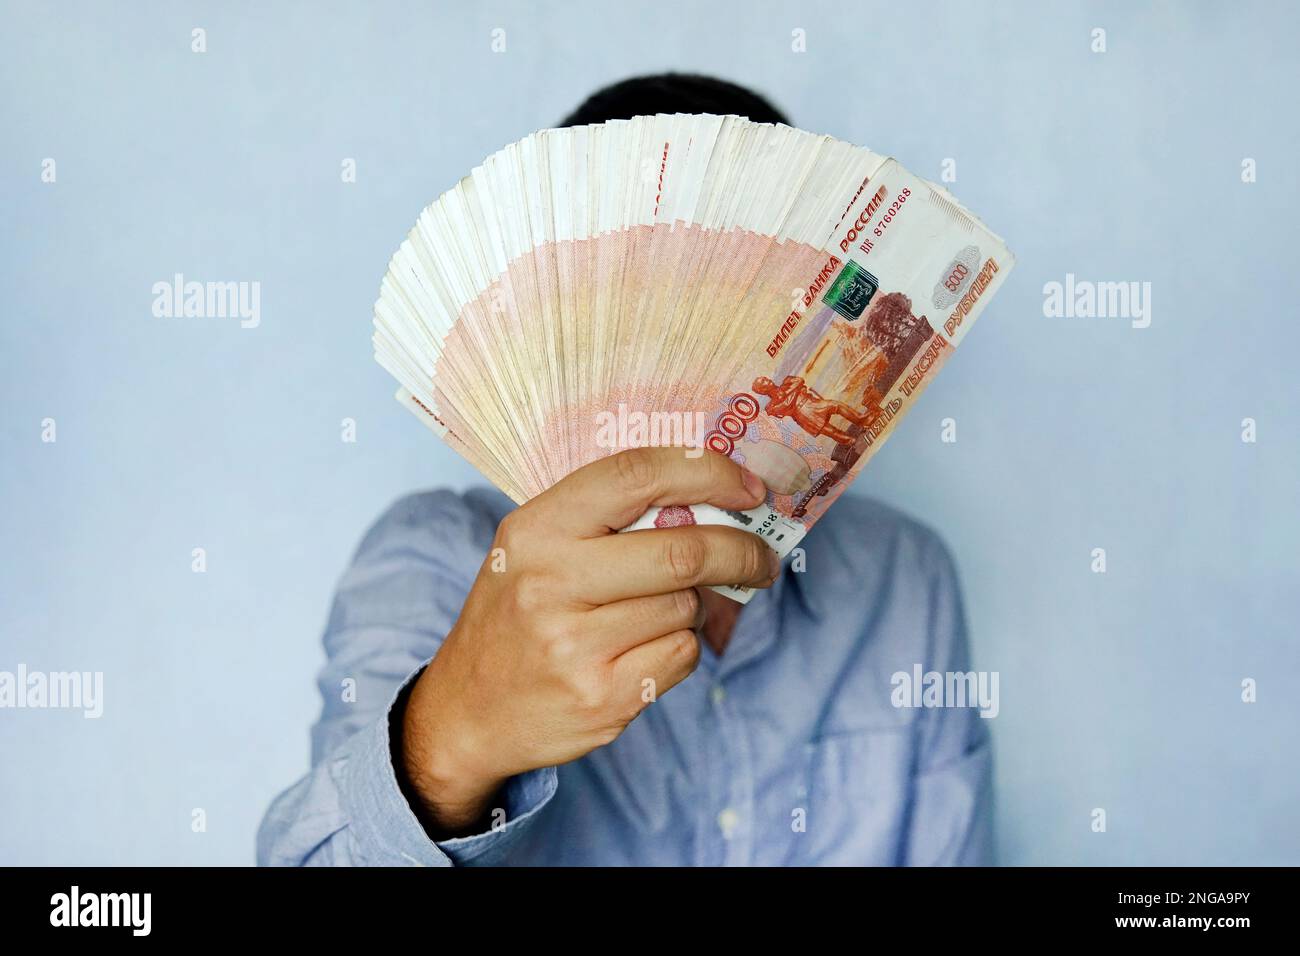 Stapel von Banknoten 5 000 russische Rubel in der Hand des Menschen auf blauem Hintergrund. Bündel Banknoten von 5000 Rubel der Russischen Föderation. Stockfoto